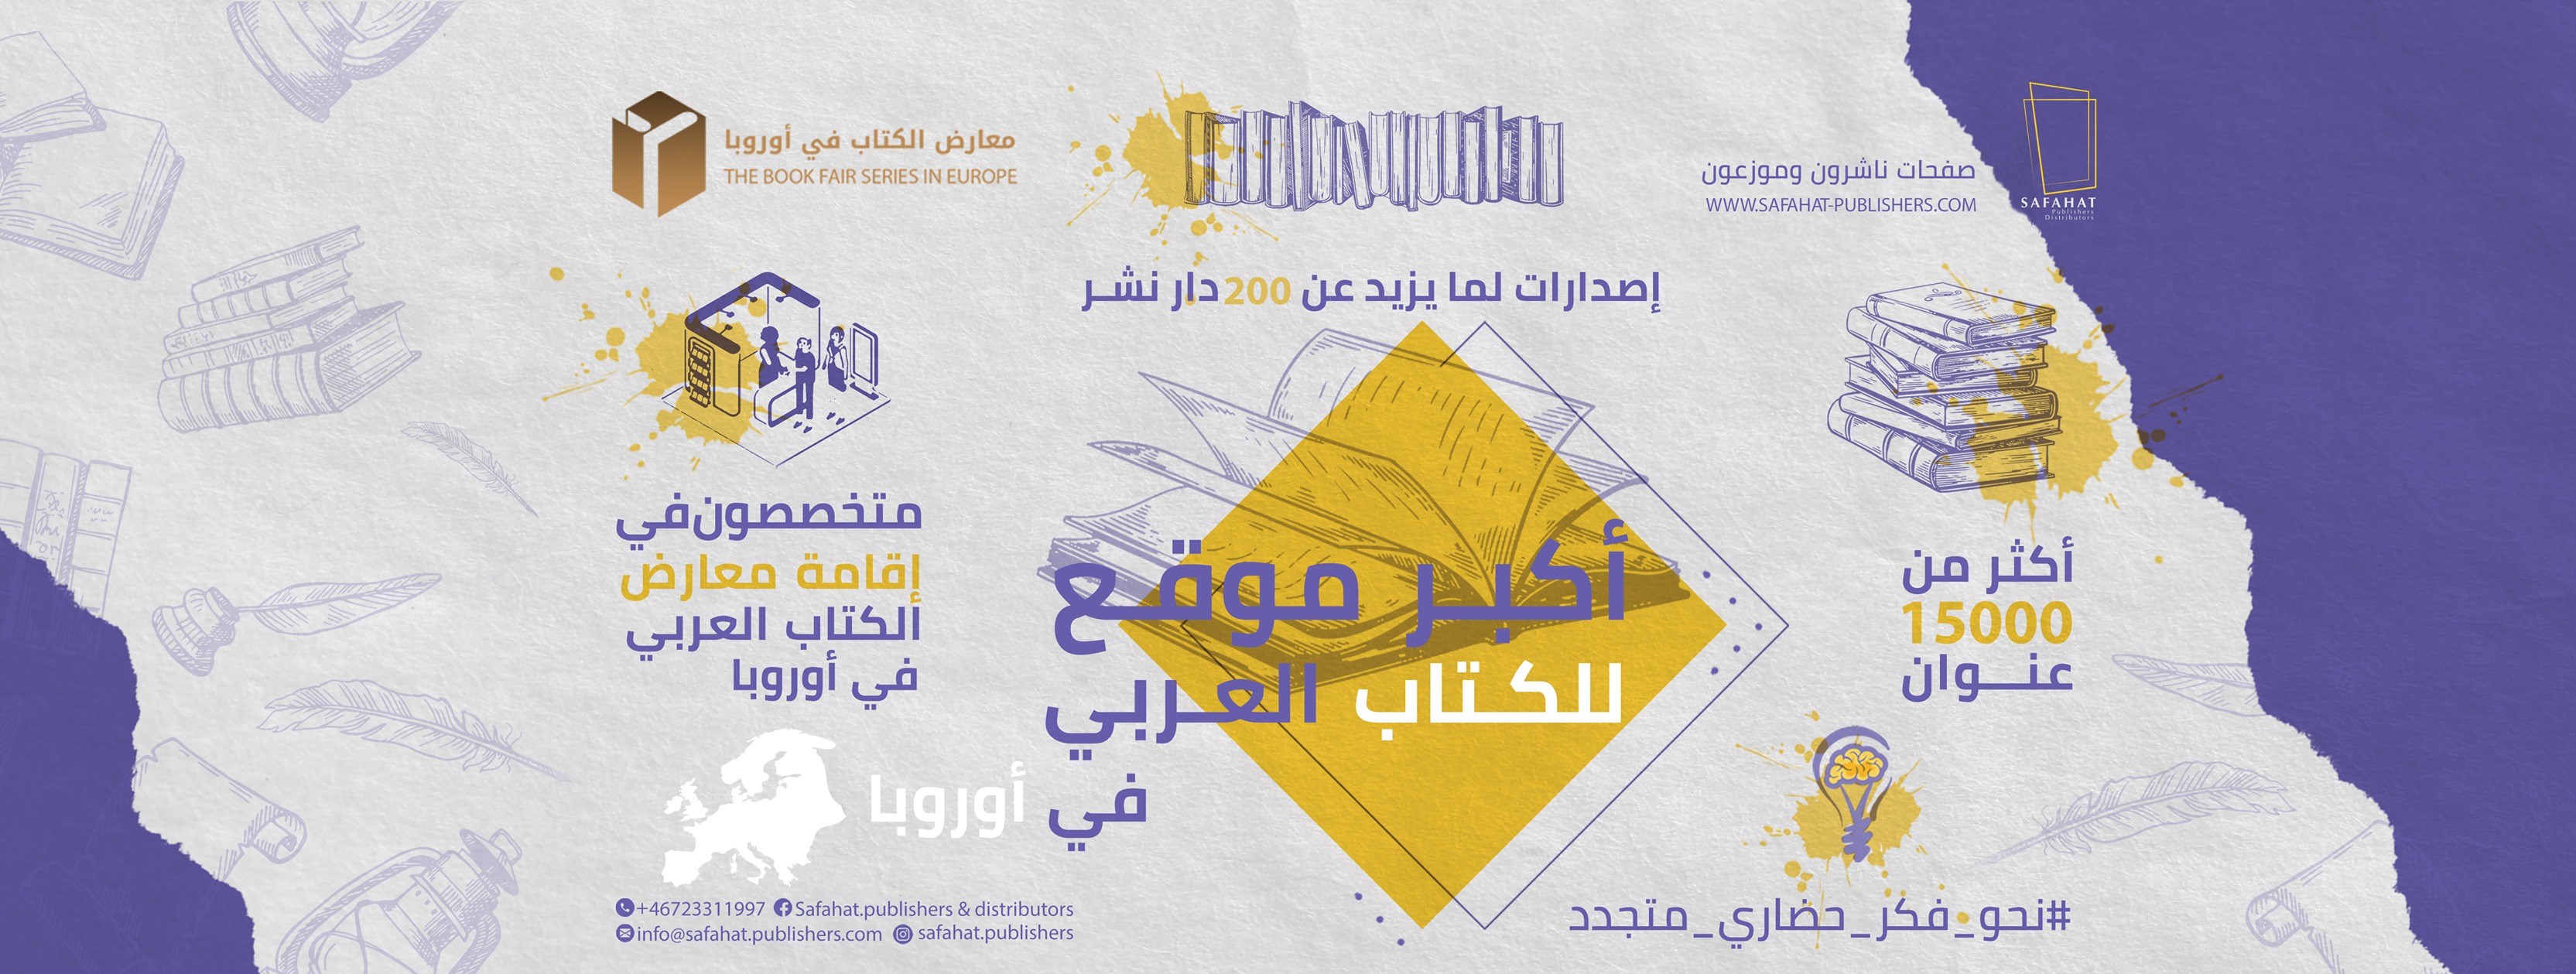 دورة ثانية لمعرض الكتاب العربي في ستوكهولم